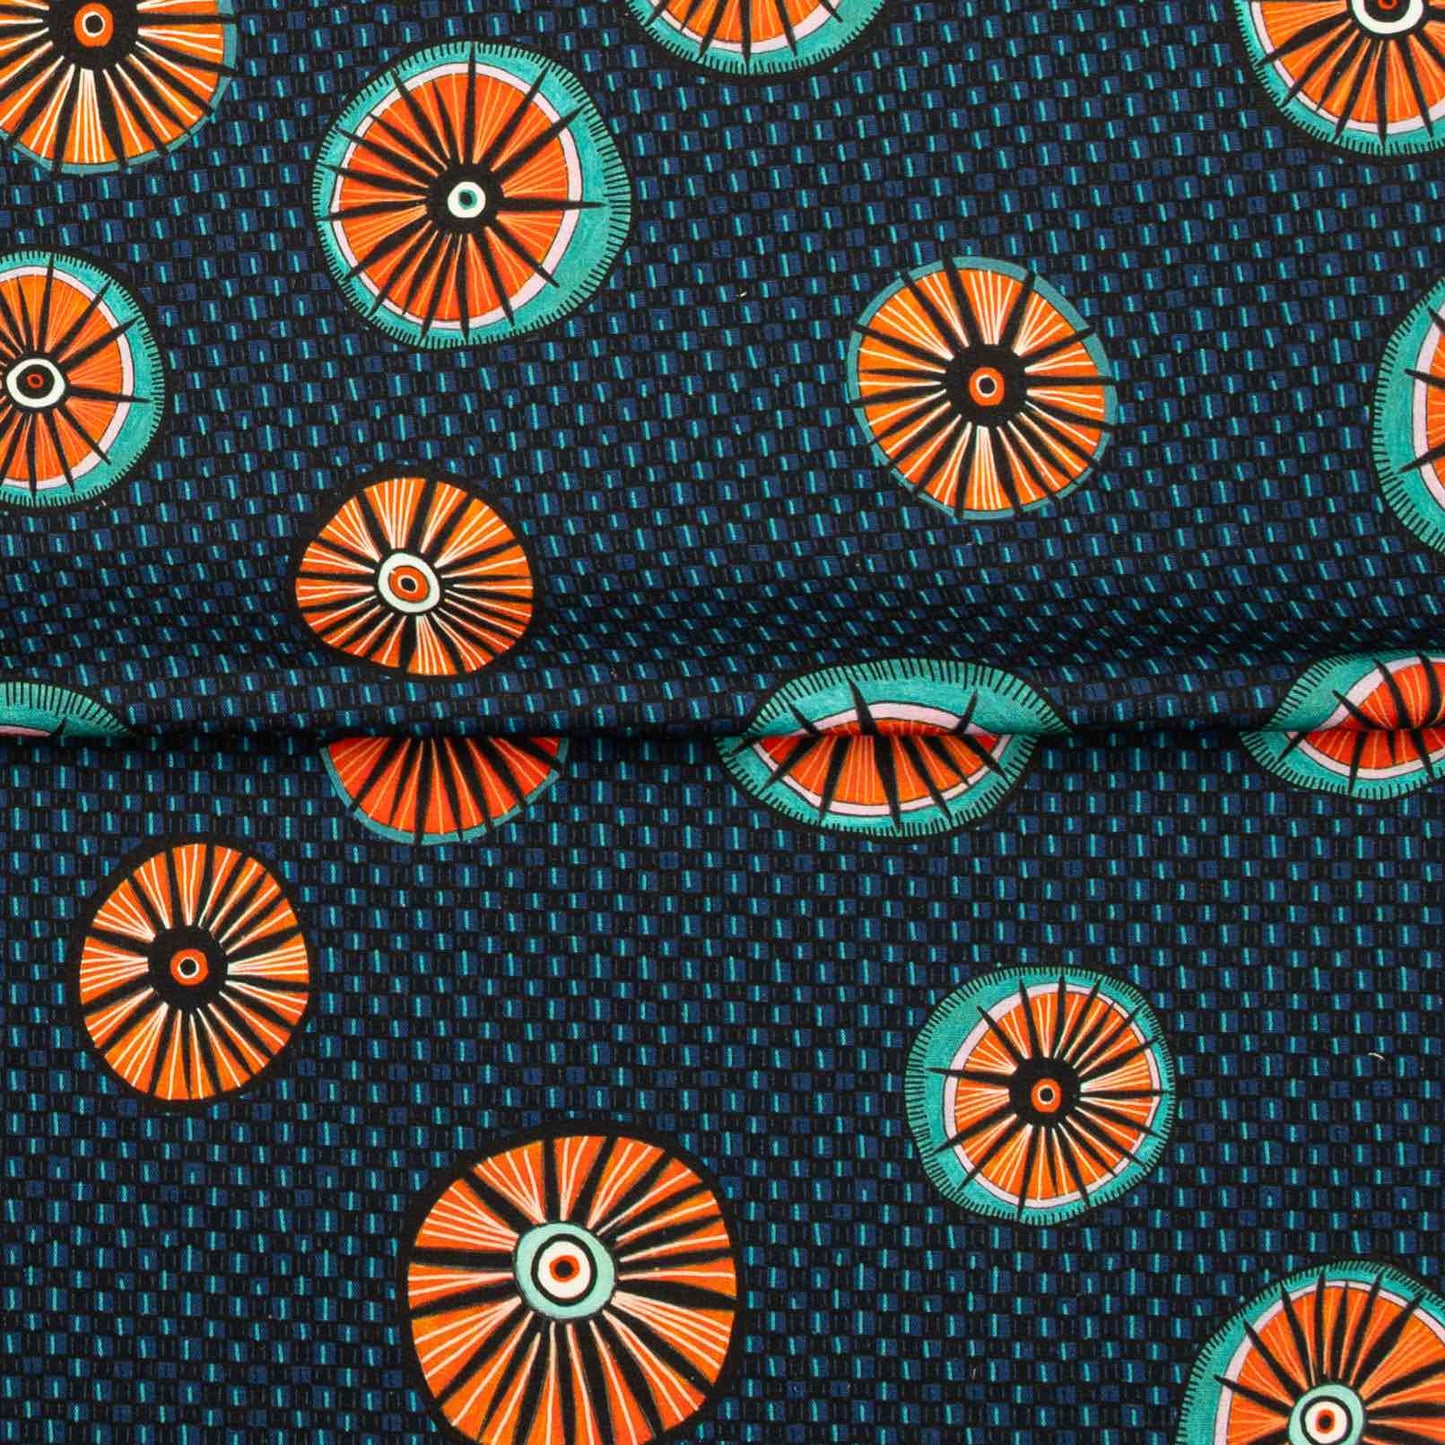 Amasumpa Royal Fabric